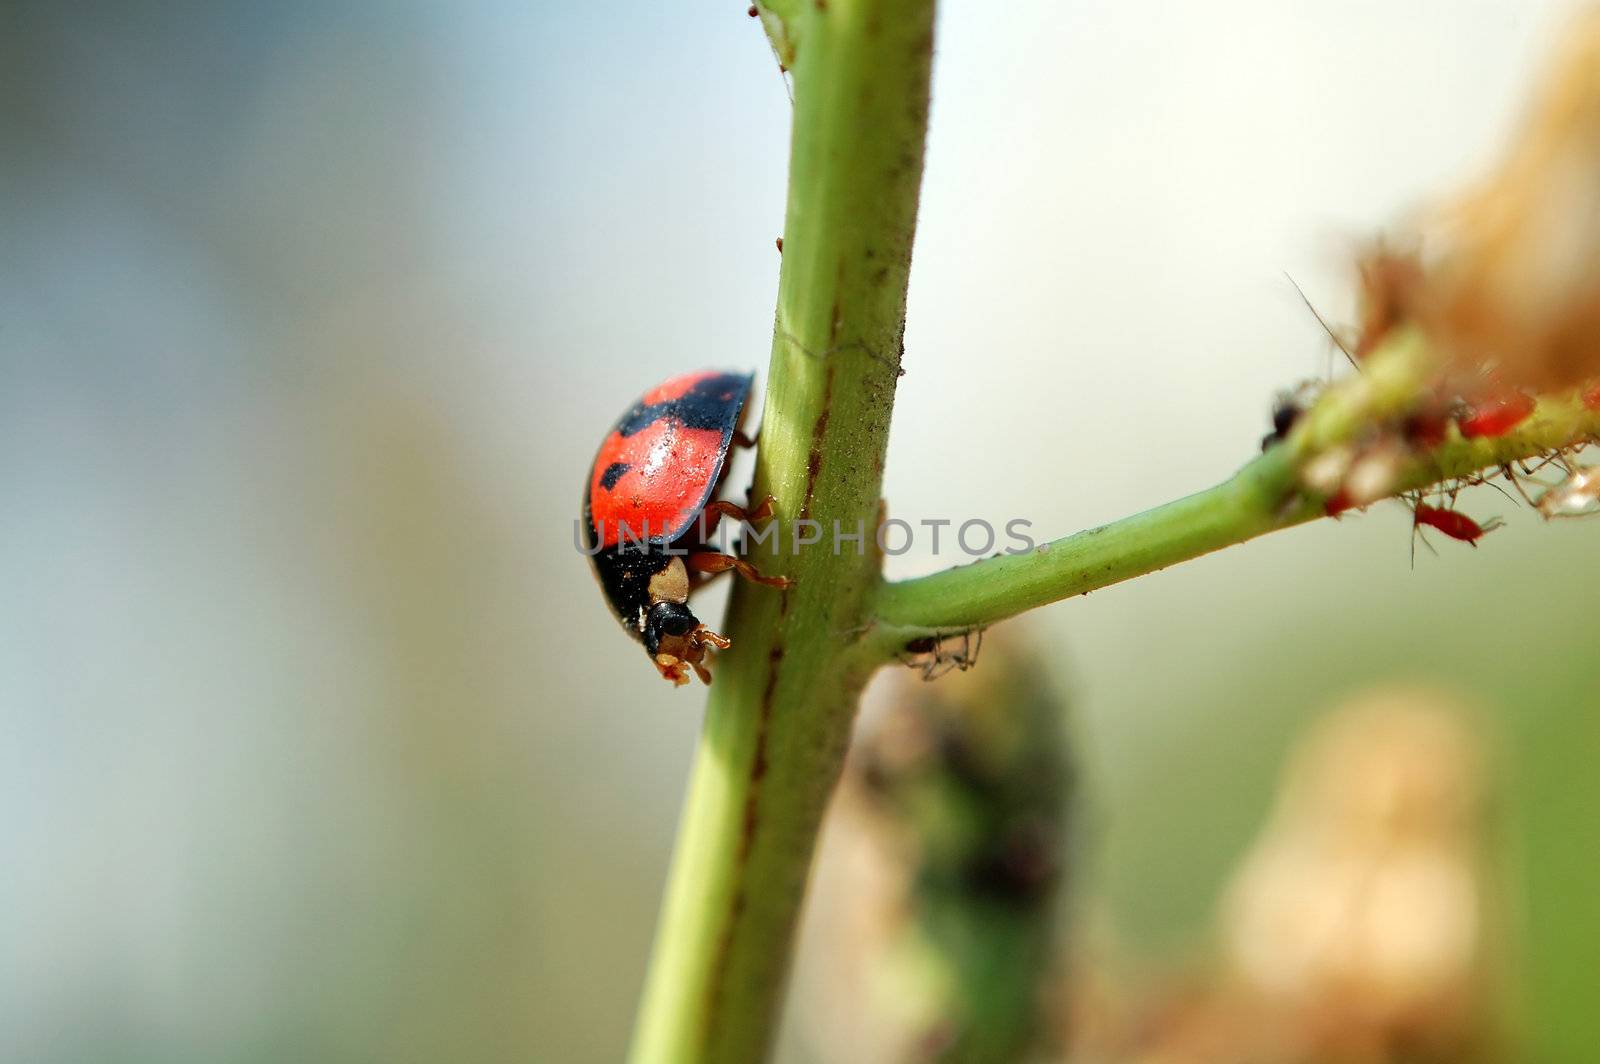 A ladybug walking on stem of plant